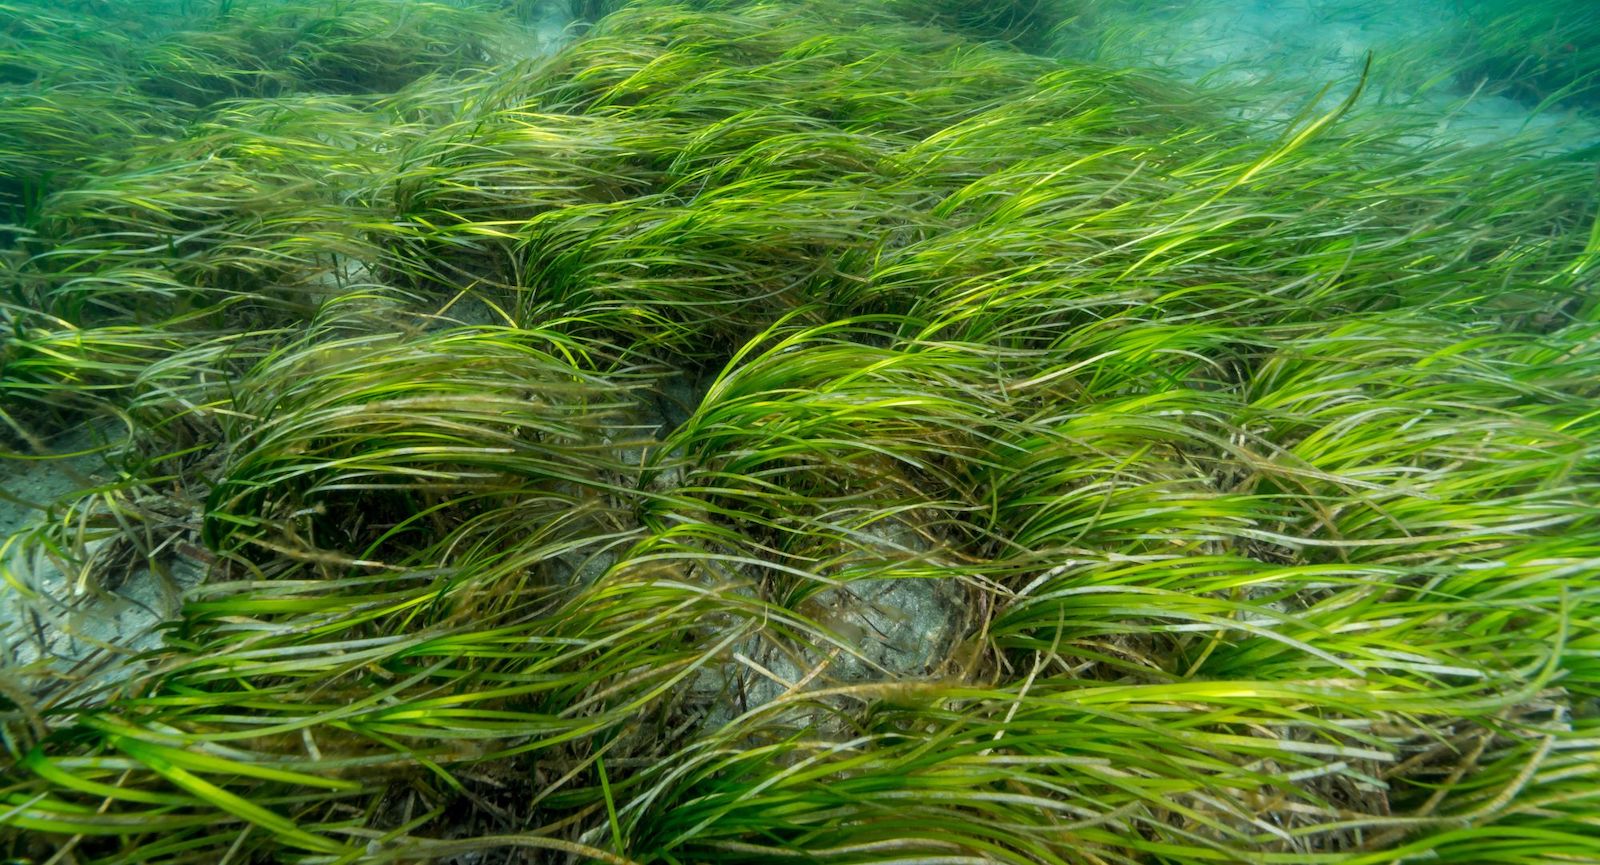 An underwater eelgrass meadow.